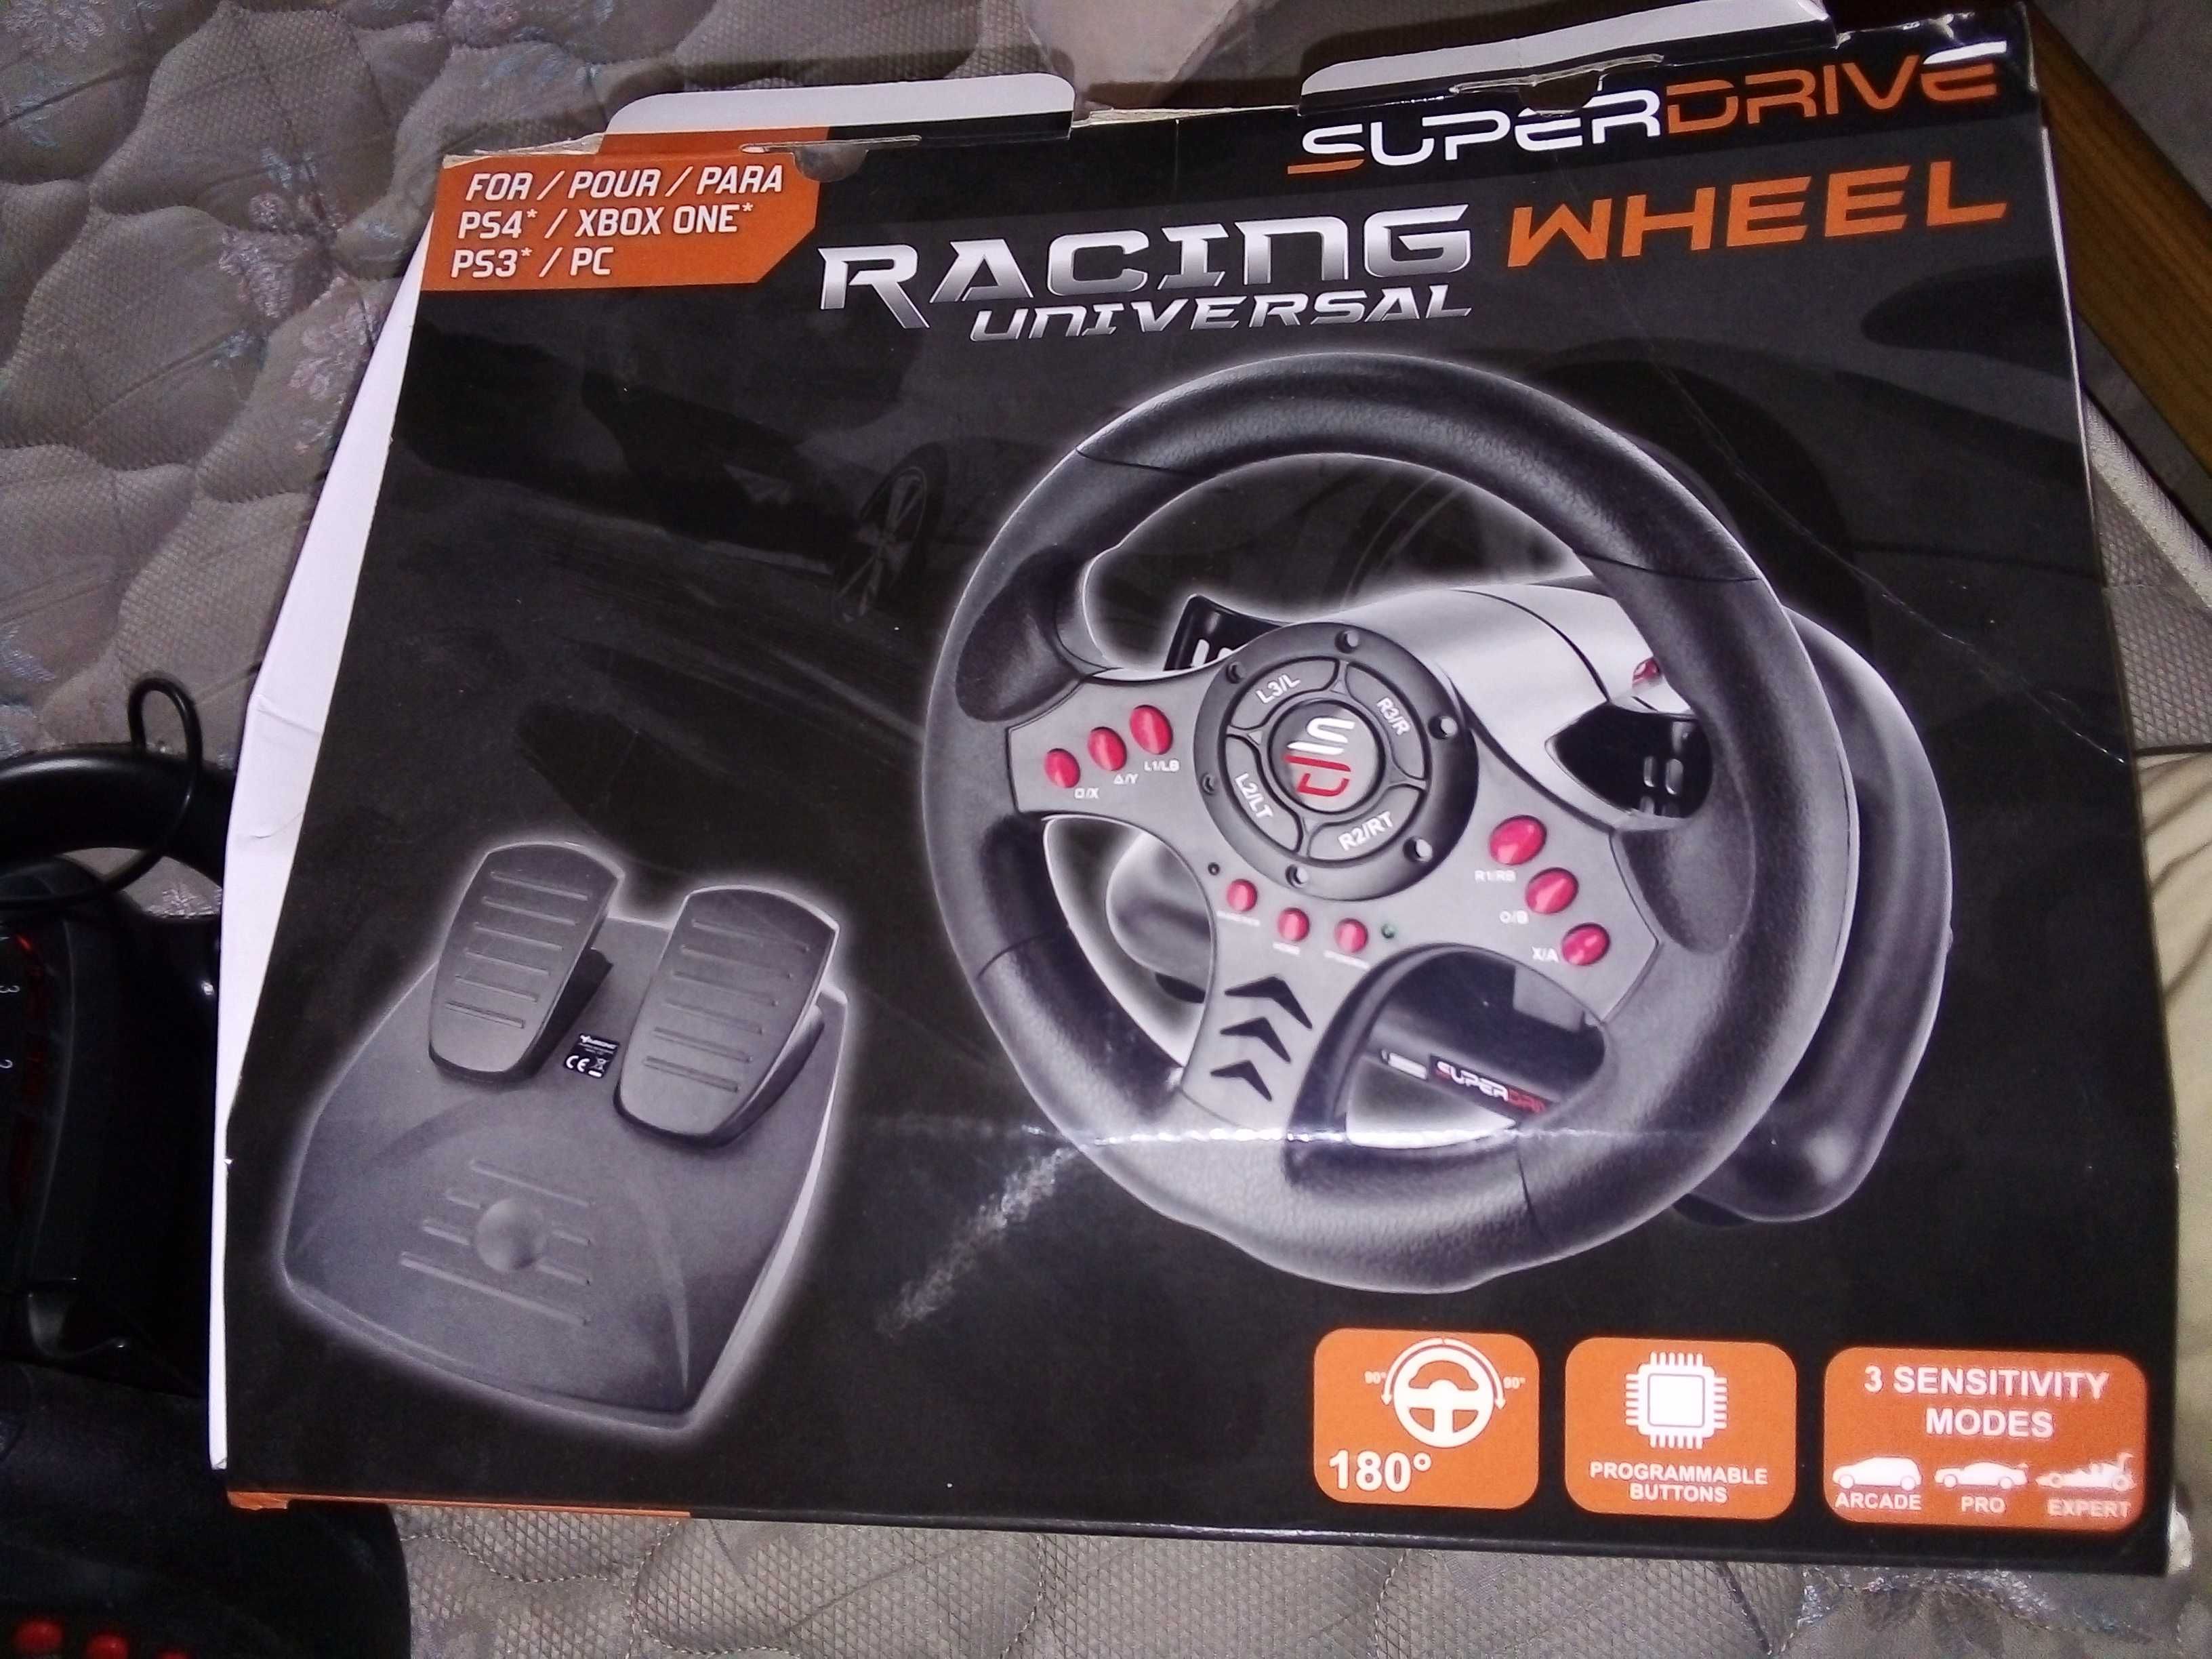 Volante / pedais para computador - Superdrive Racing Wheel (20 euros)